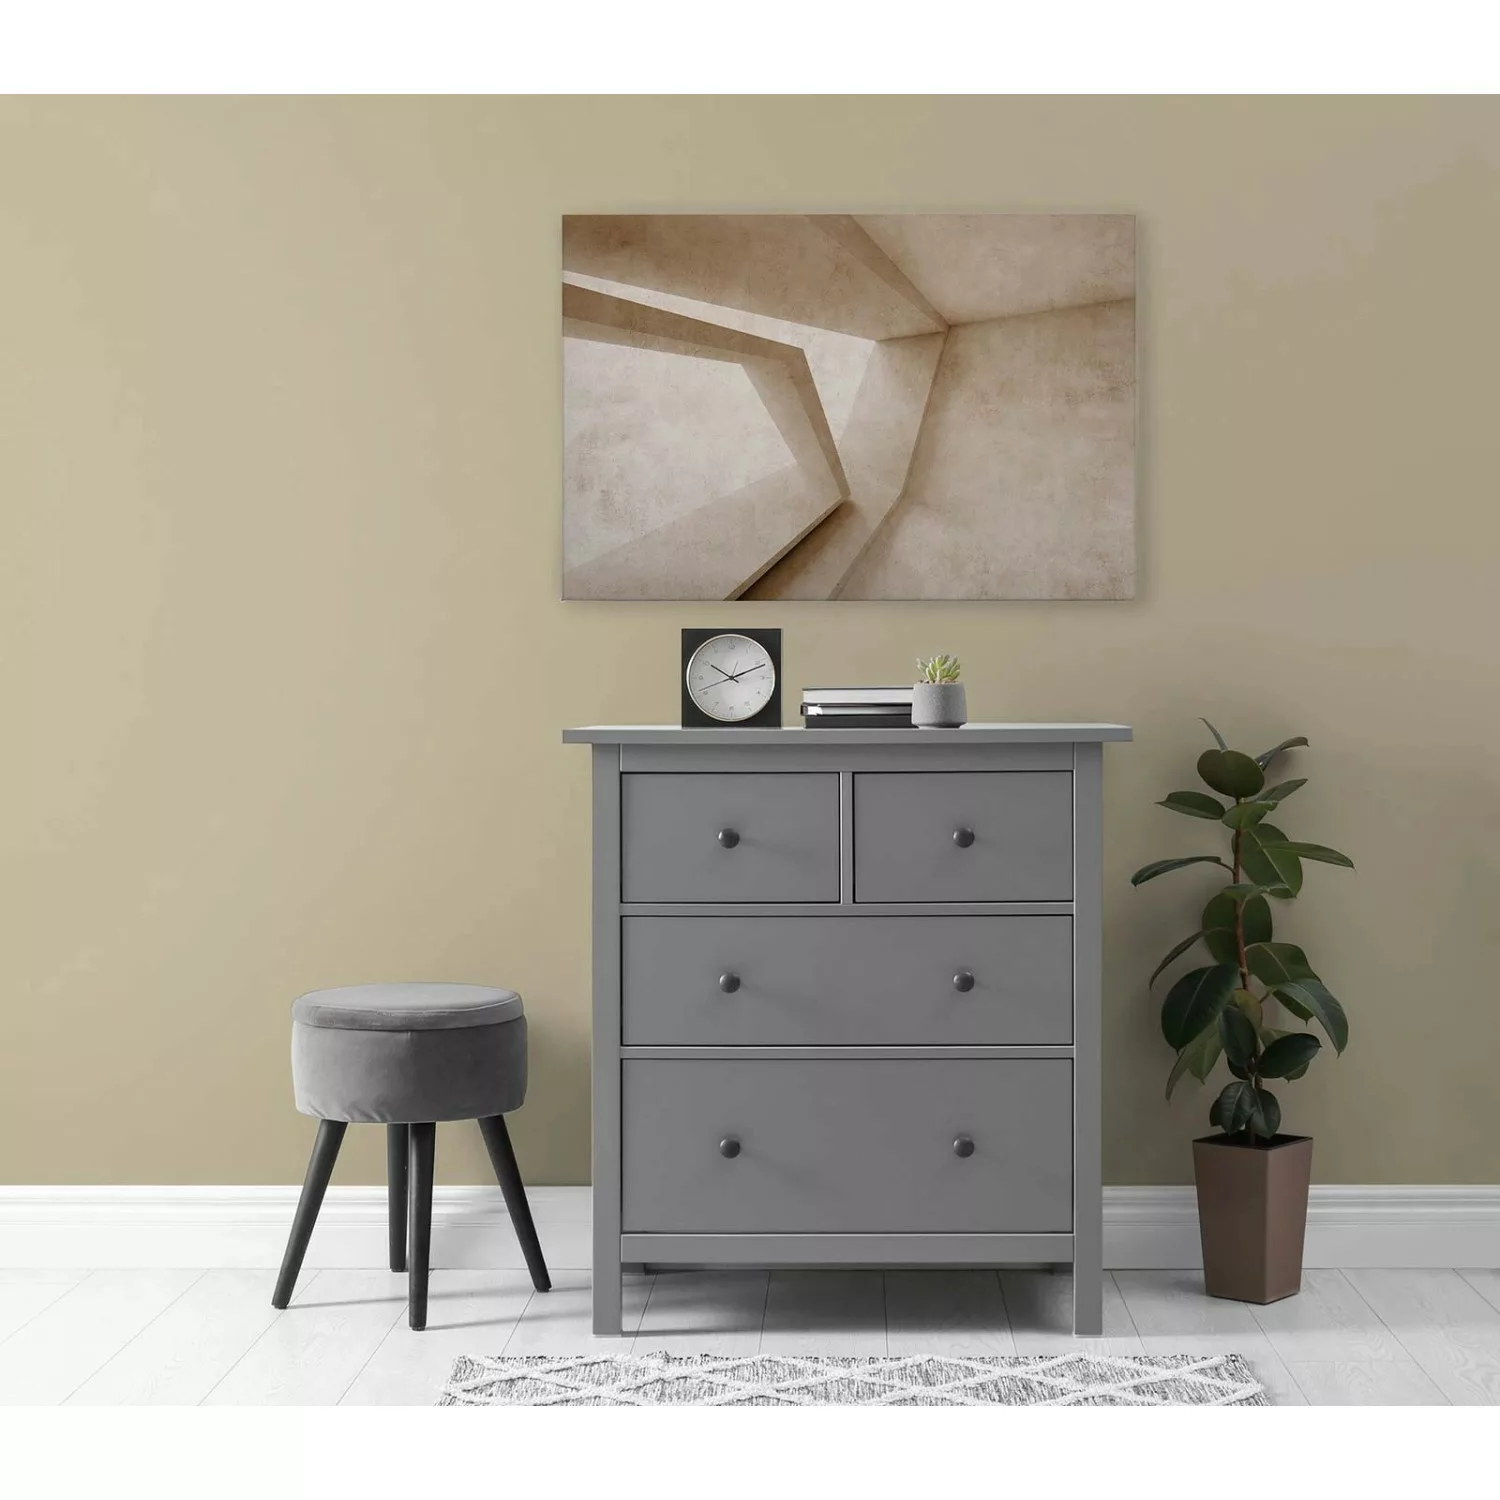 Bricoflor Bild 3D In Beige Industrial Wandbild Geometrisch Ideal Für Schlaf günstig online kaufen